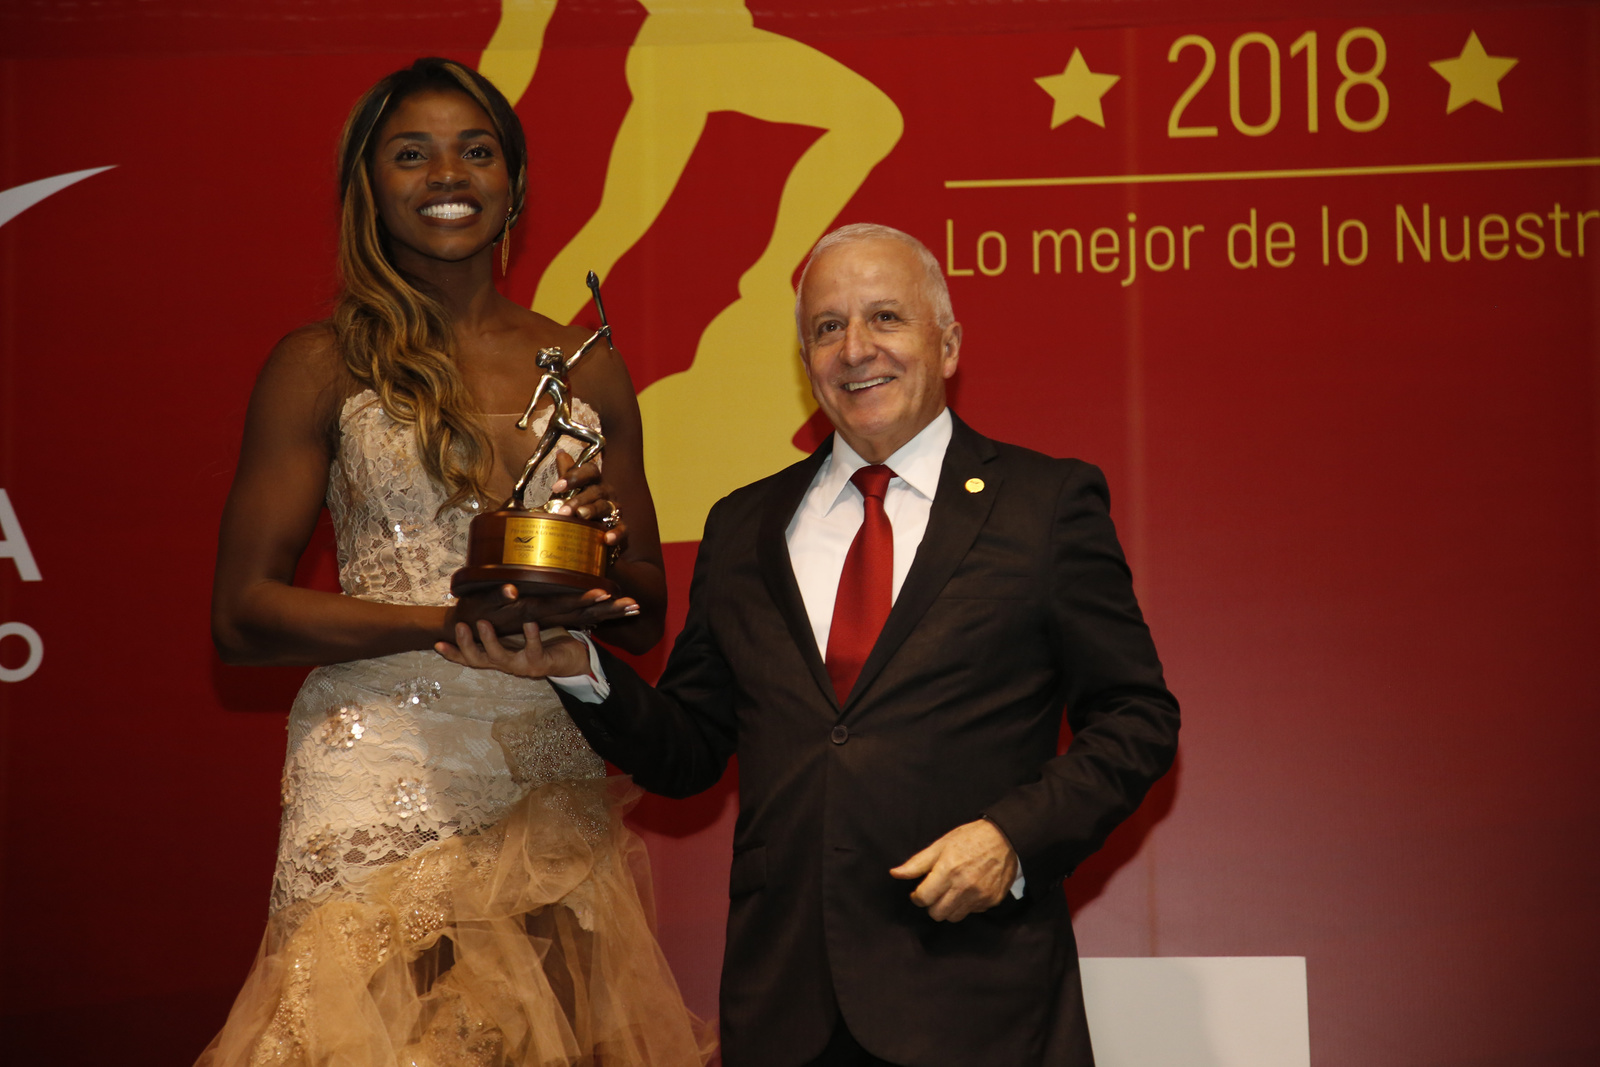 Caterine Ibargüen Mena fue elegida como la mejor deportista de 2018 y se hizo acreedora al Altius de Oro, del Comité Olímpico Colombiano en la modalidad de deportes incluidos en el programa de los Juegos Olímpicos.